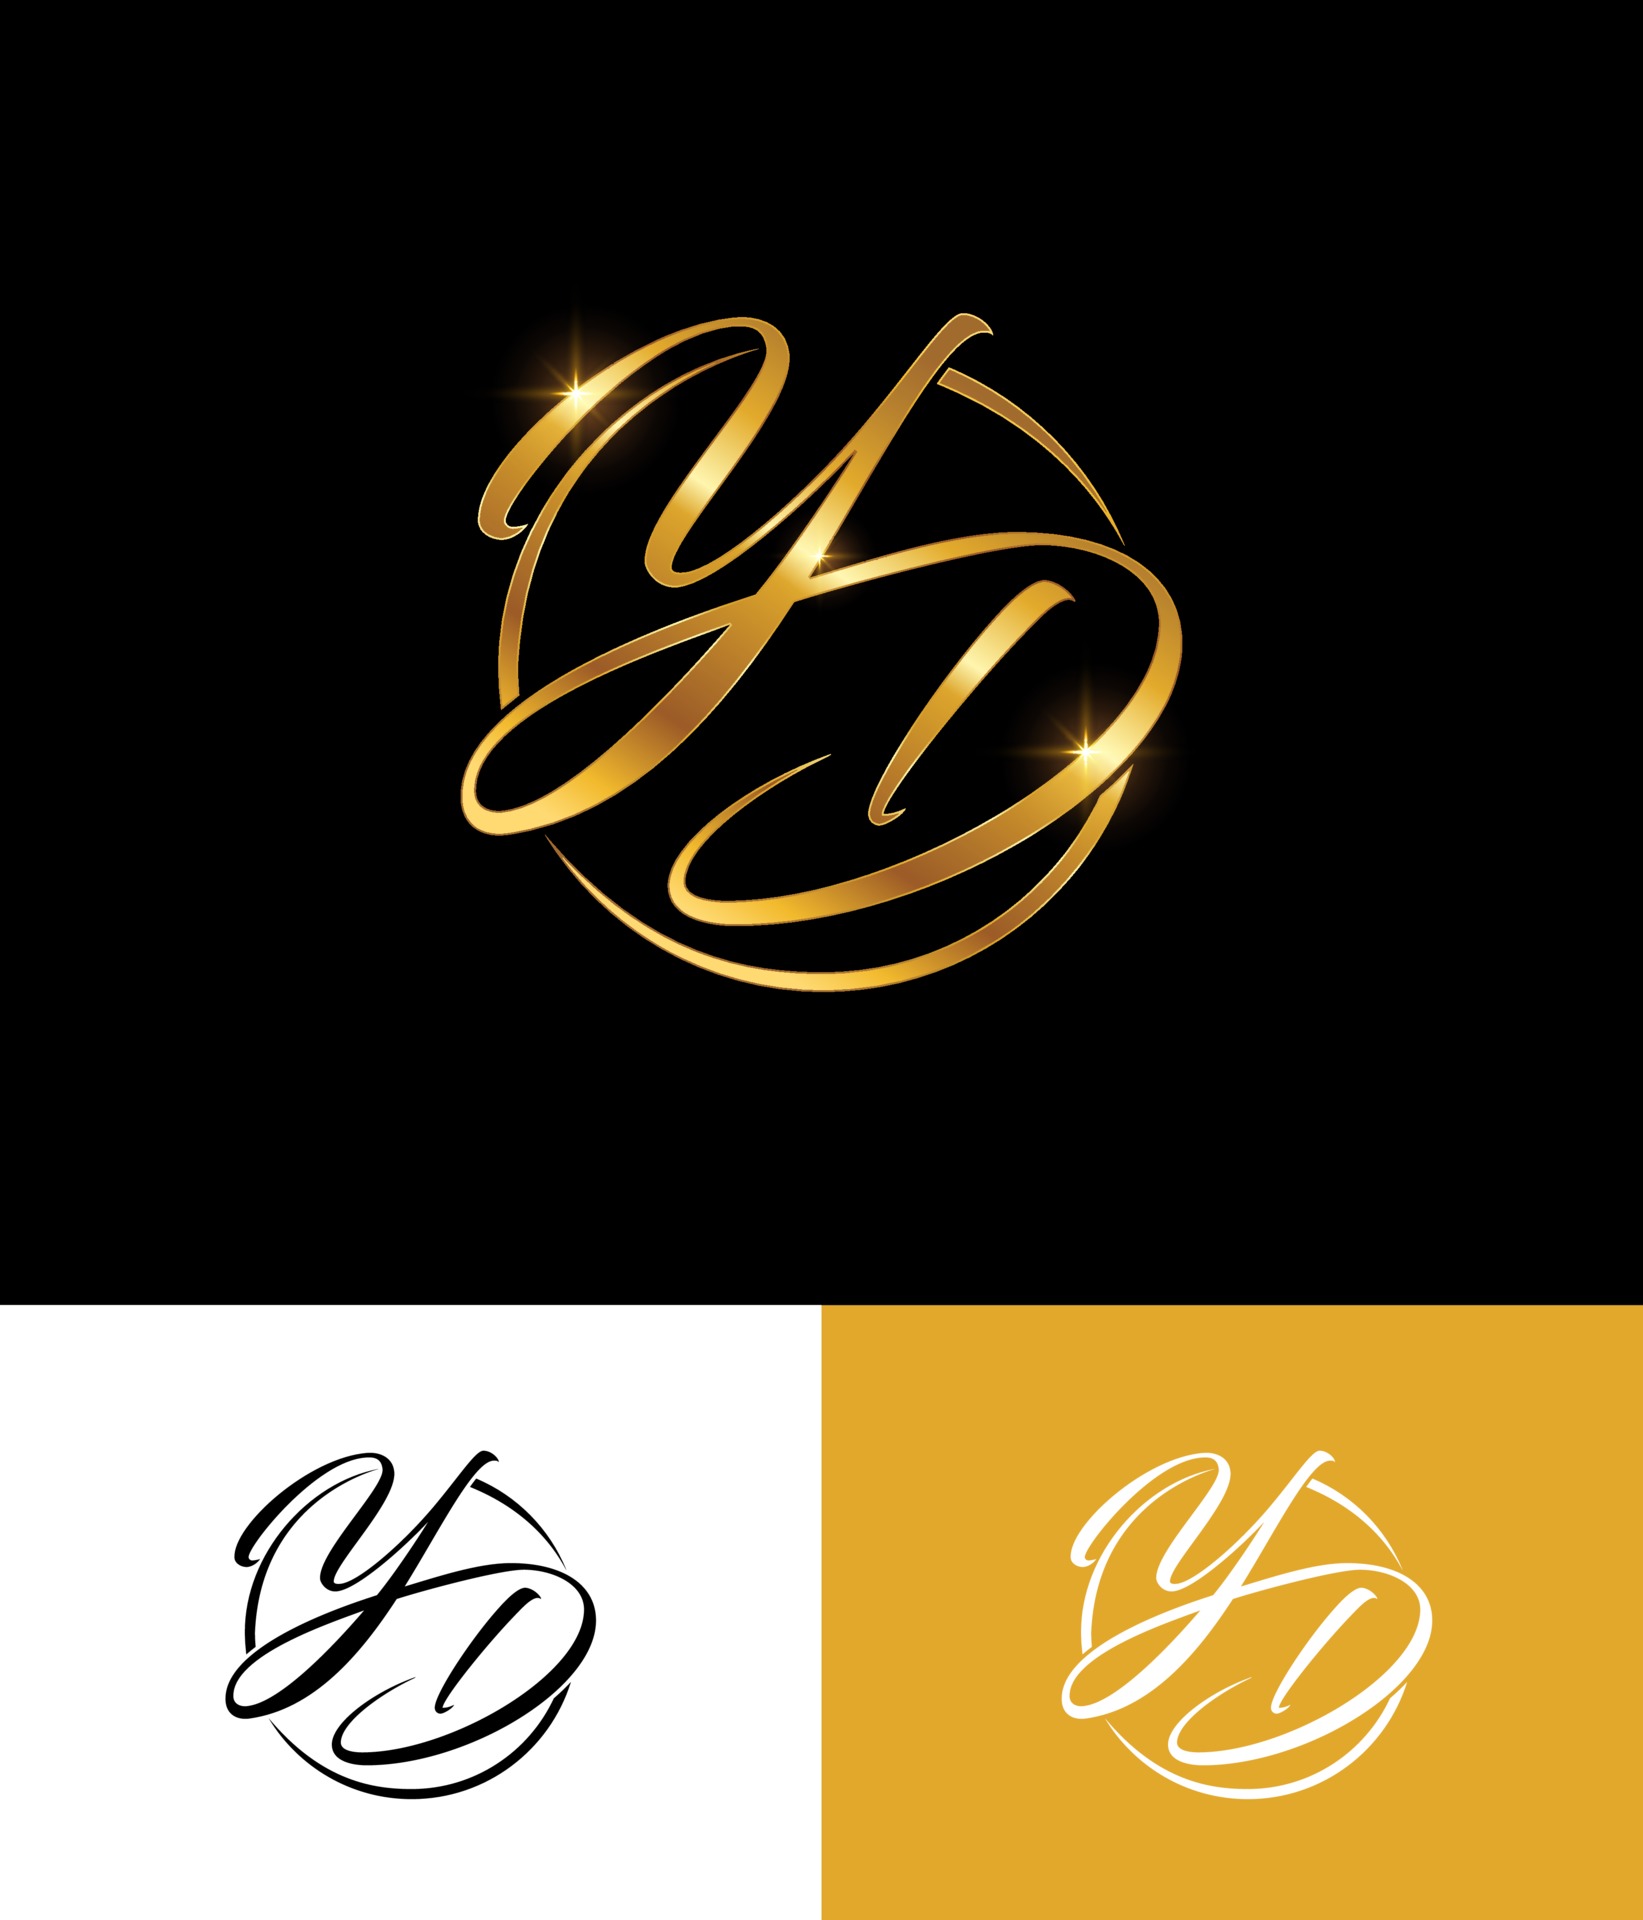 Golden Yd Monogram Initial Logo Vector Art At Vecteezy